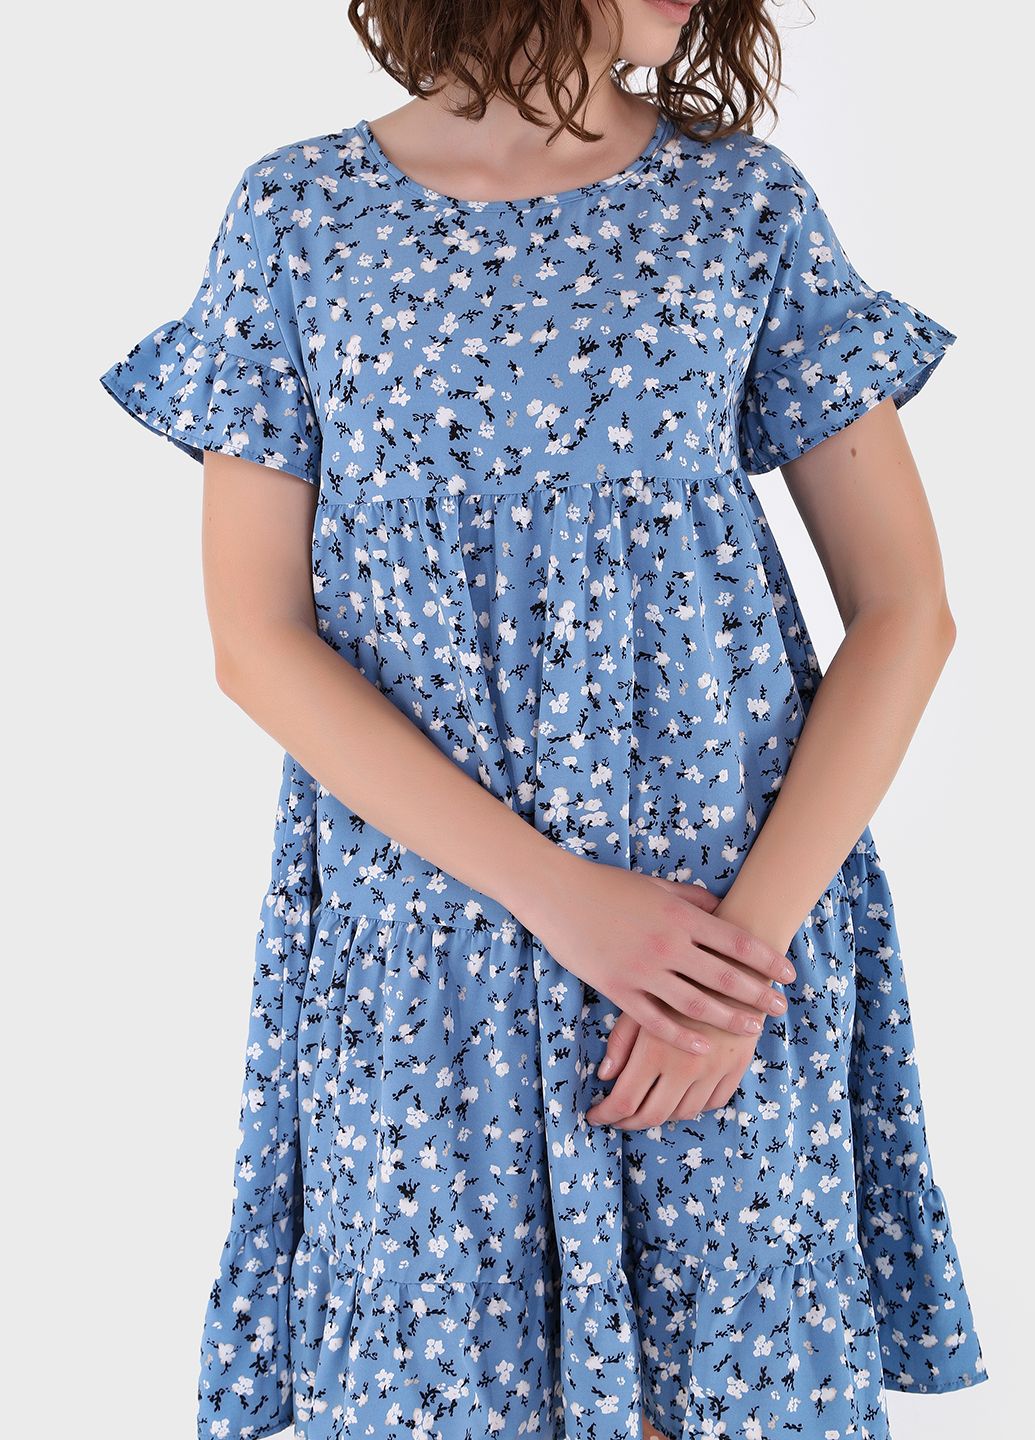 Купить Летнее хлопковое платье голубого цвета Merlini Цветы 700000022, размер 42-44 в интернет-магазине